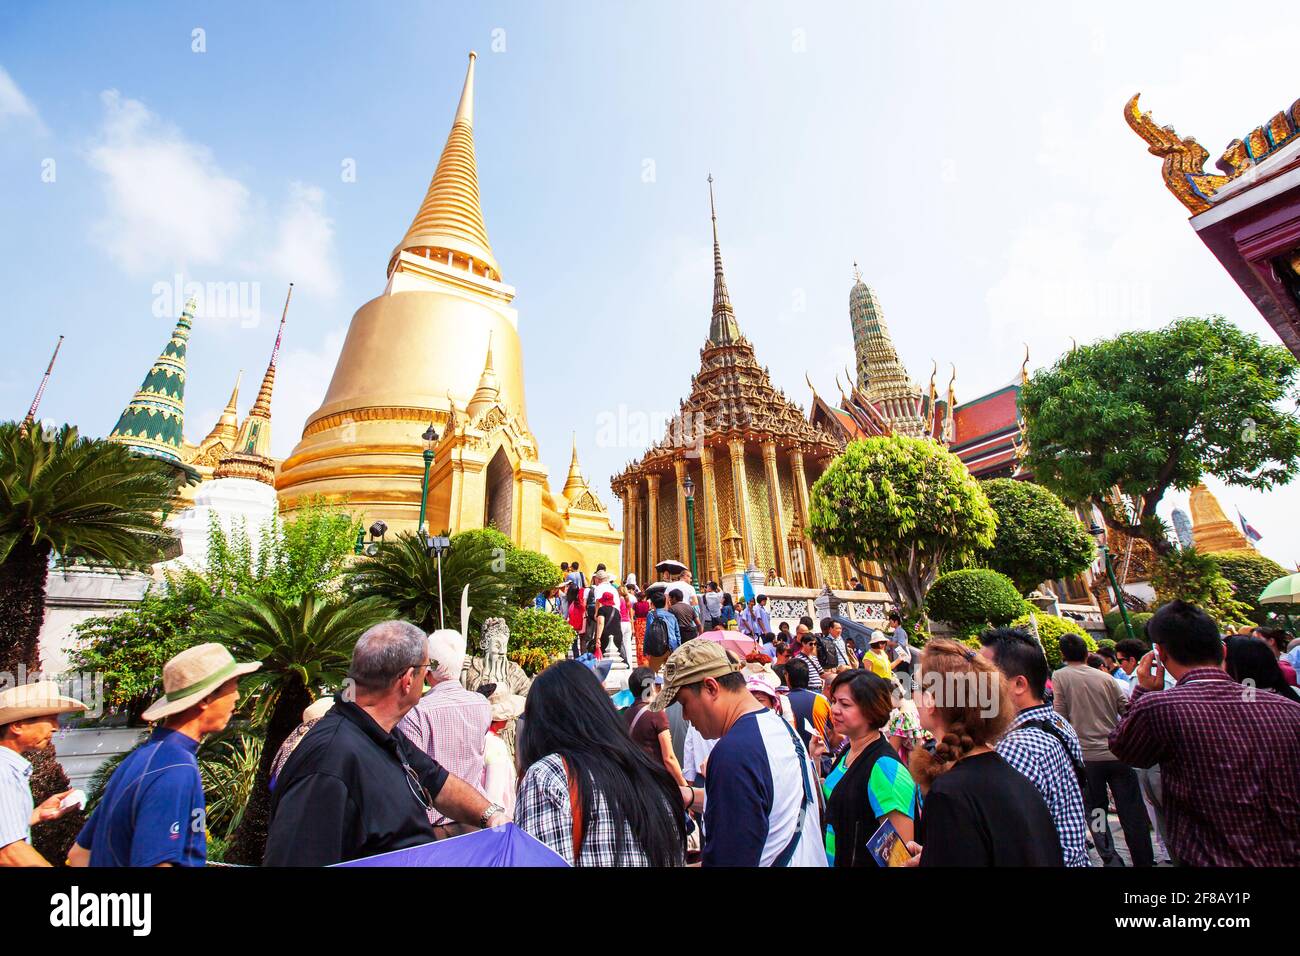 Bangkok, Thailand - 28. NOVEMBER 2014: Touristenmassen, die sich am goldenen alten Tempel des Wat Phra Kaew erfreuen, einer der beliebtesten Touristenattraktionen Asiens. Stockfoto